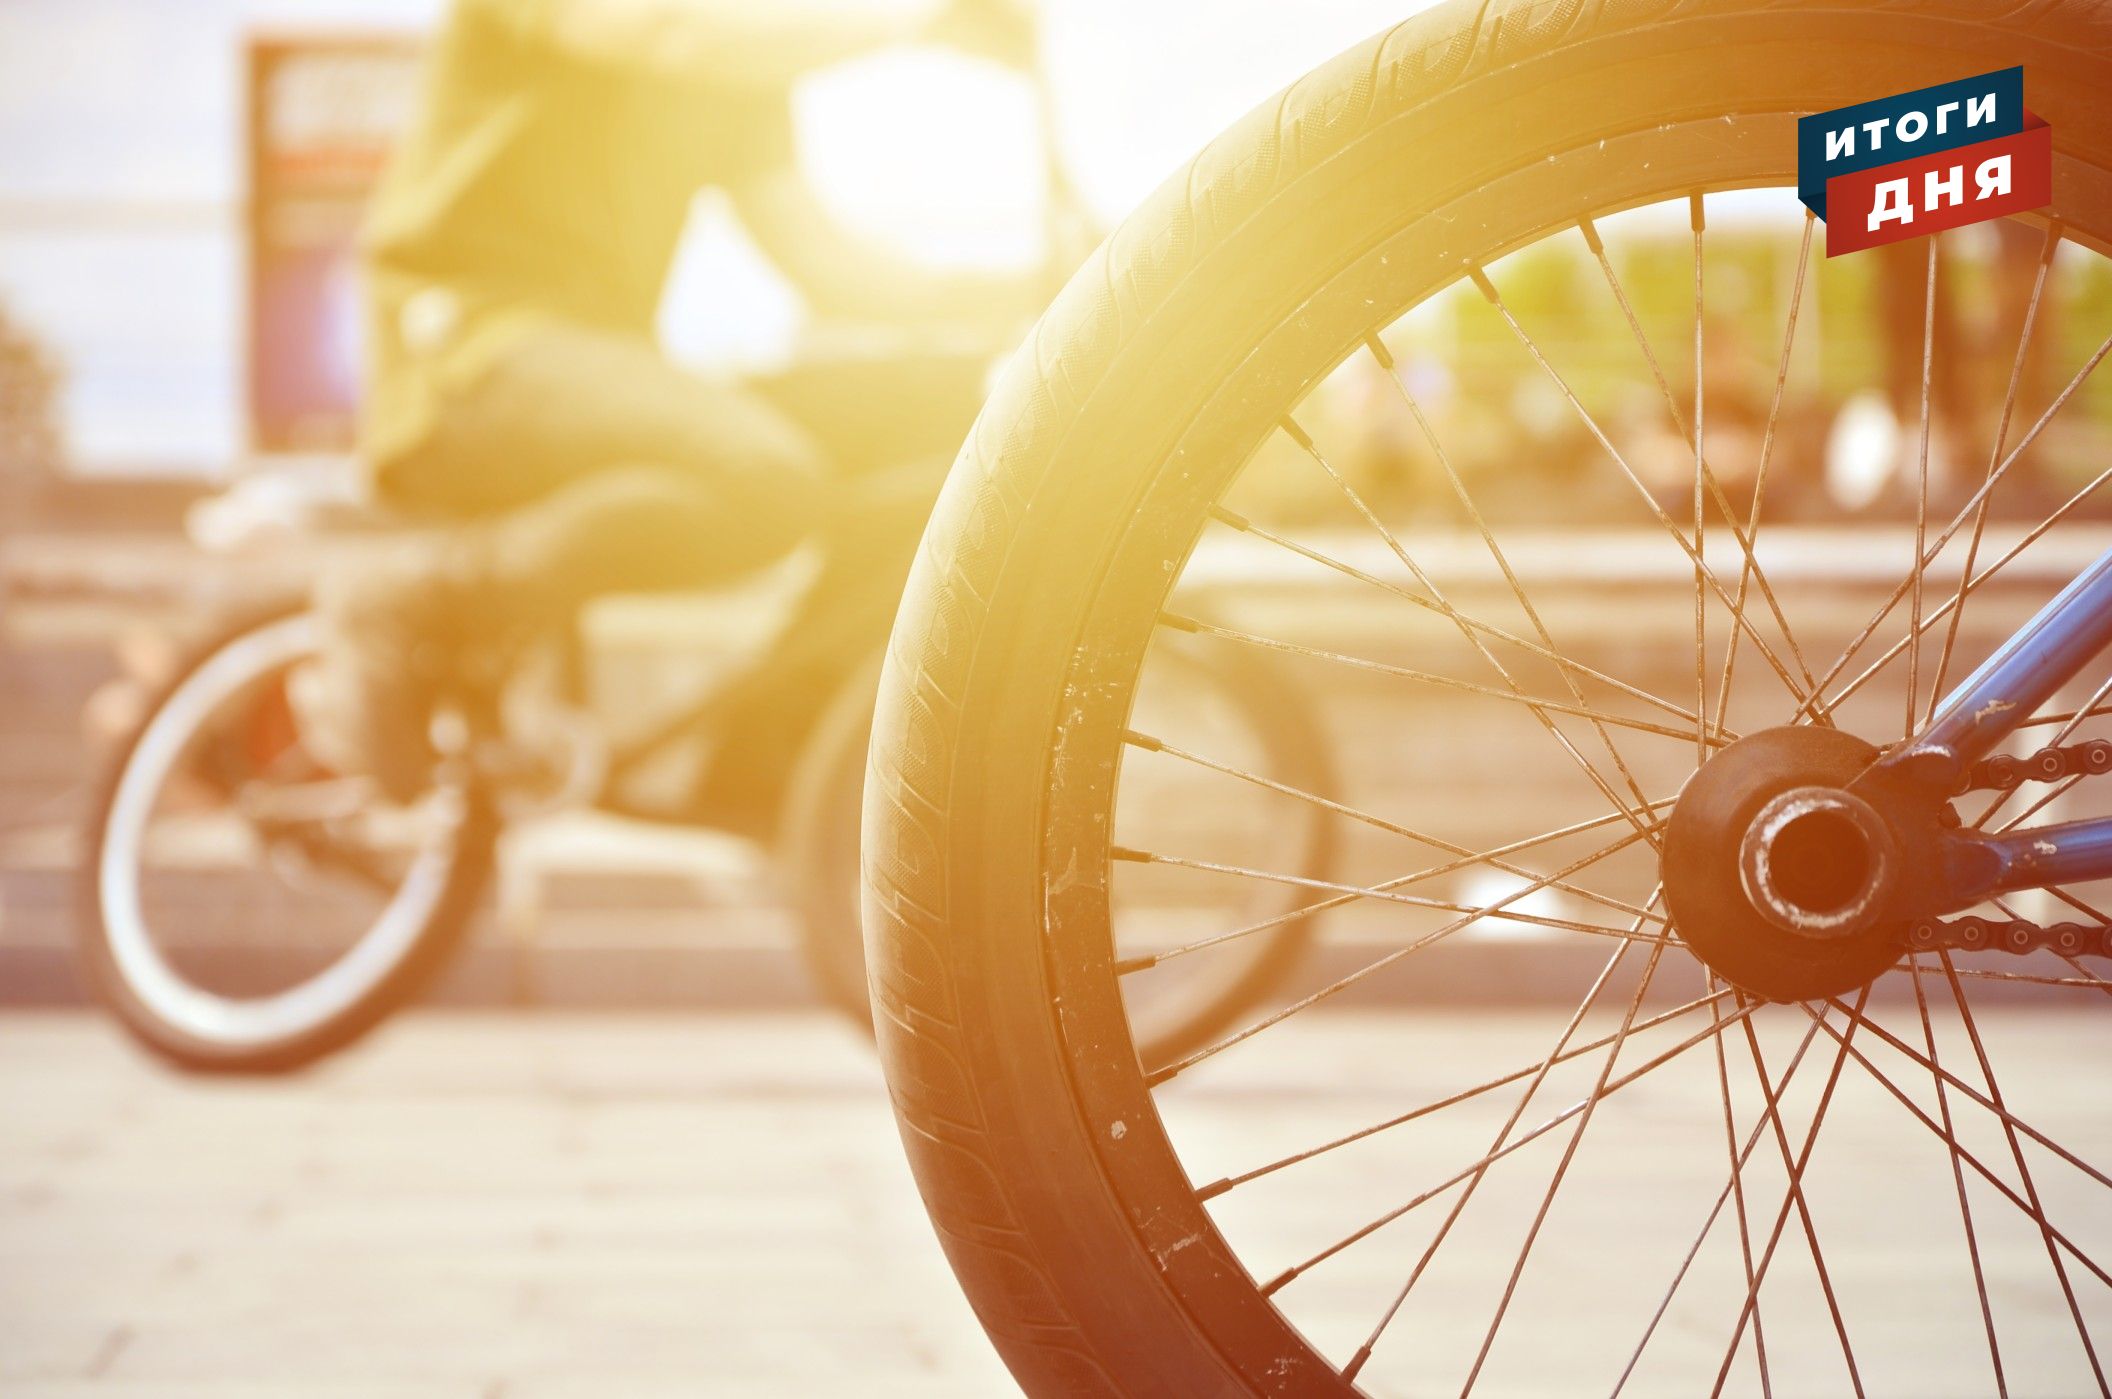 

Итоги дня: новые даты «Улетая» в Удмуртии и сезонный рост ДТП с велосипедистами

